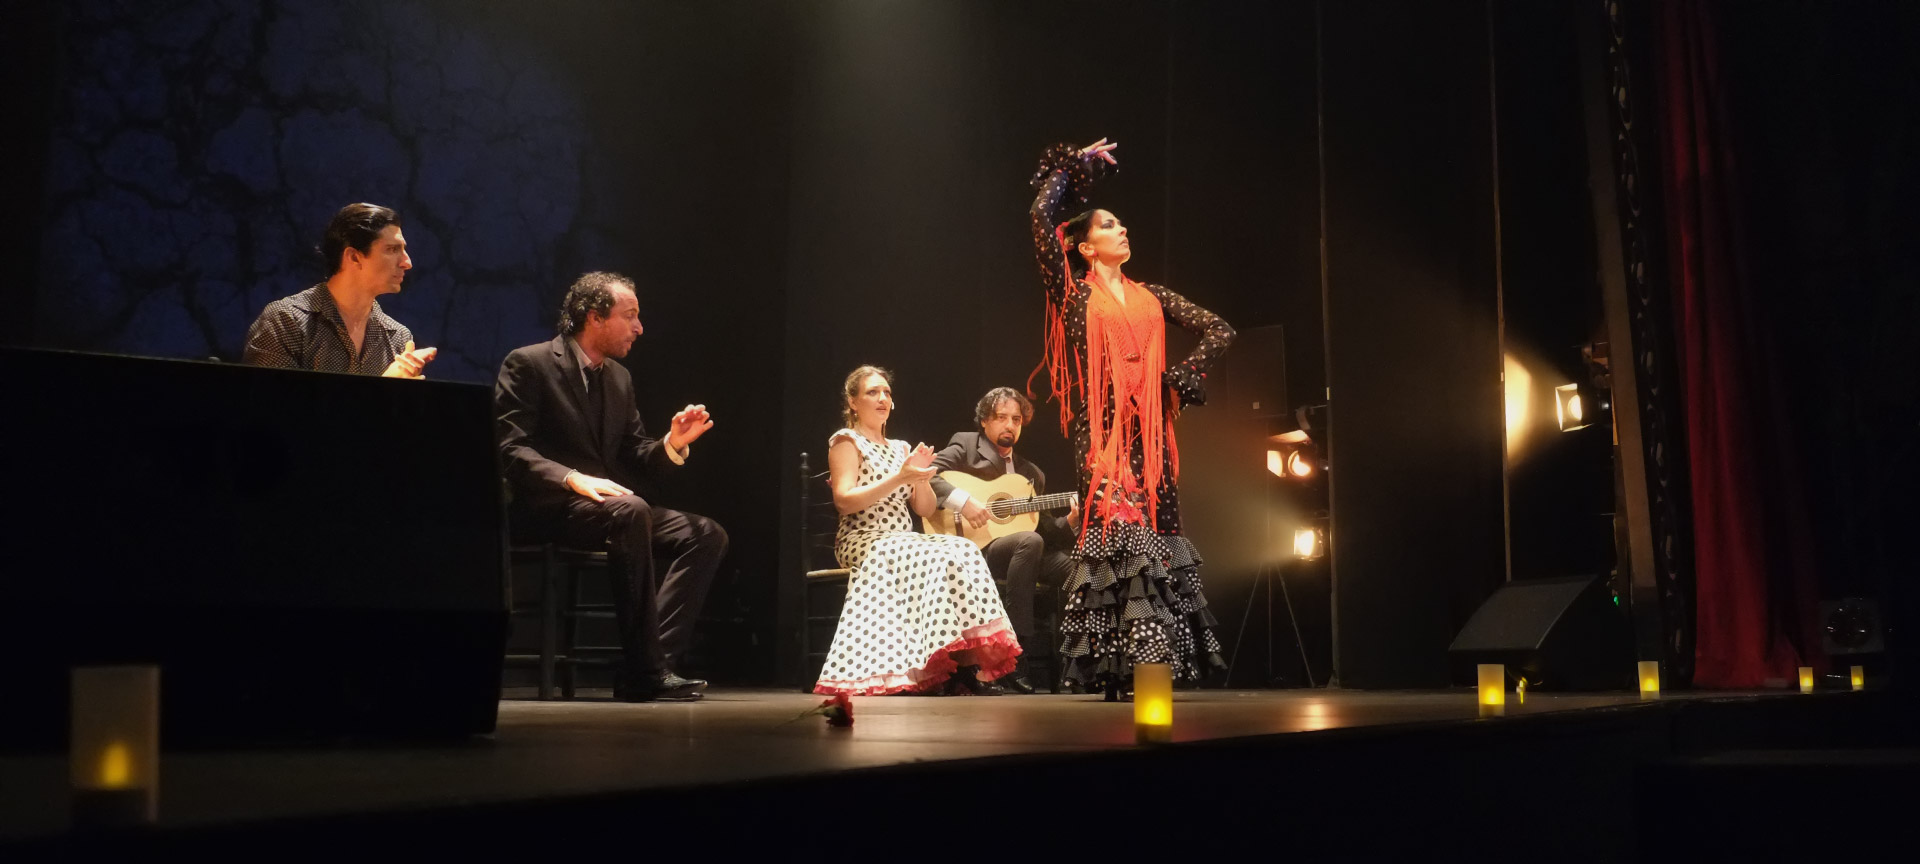 Flamencodans en muzikanten op podium.